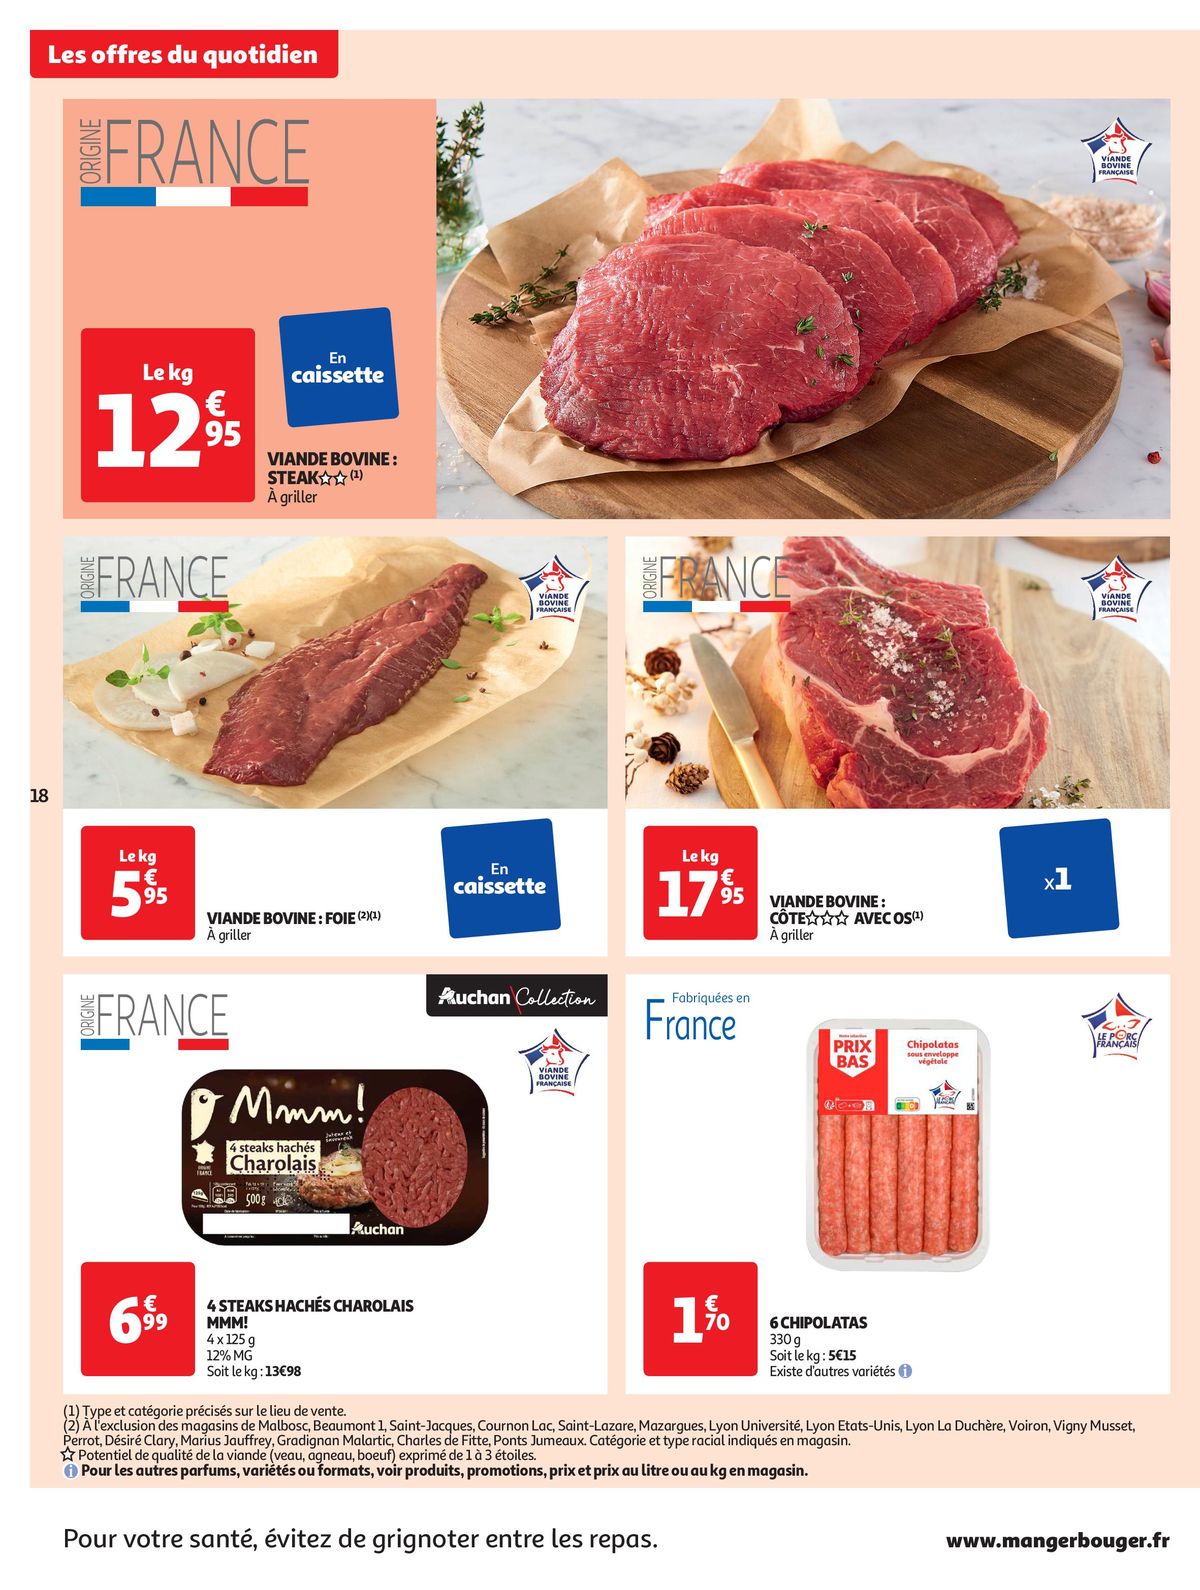 Catalogue Format XXL à prix XXS dans votre supermarché, page 00018